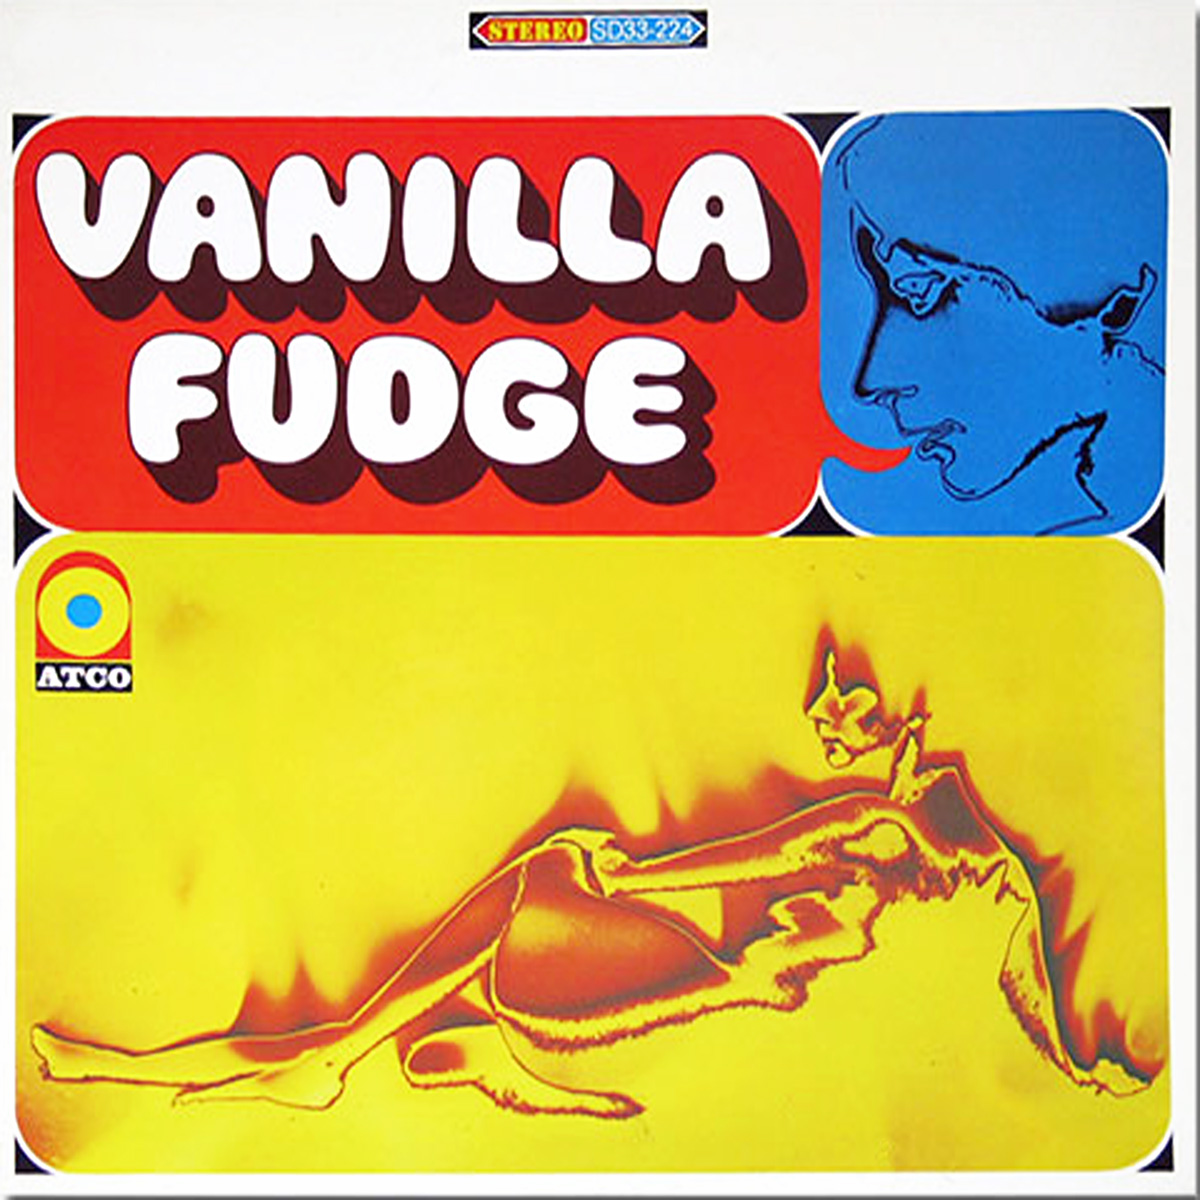 Vanilla Fudge First Album